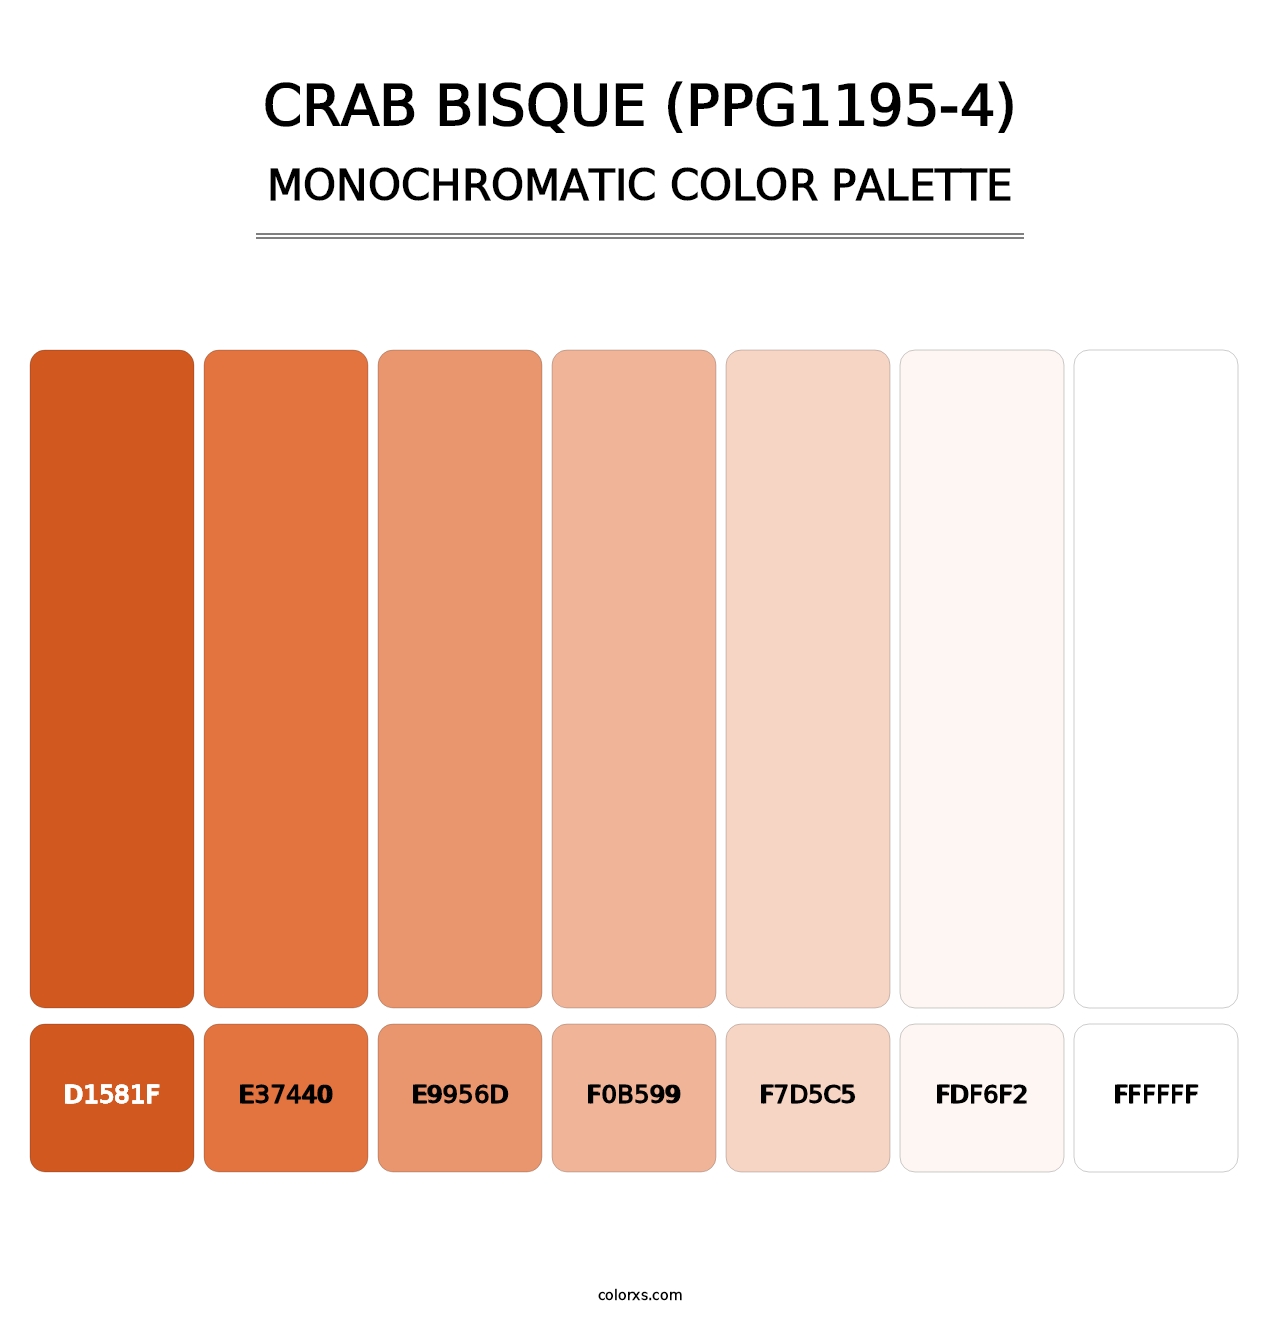 Crab Bisque (PPG1195-4) - Monochromatic Color Palette